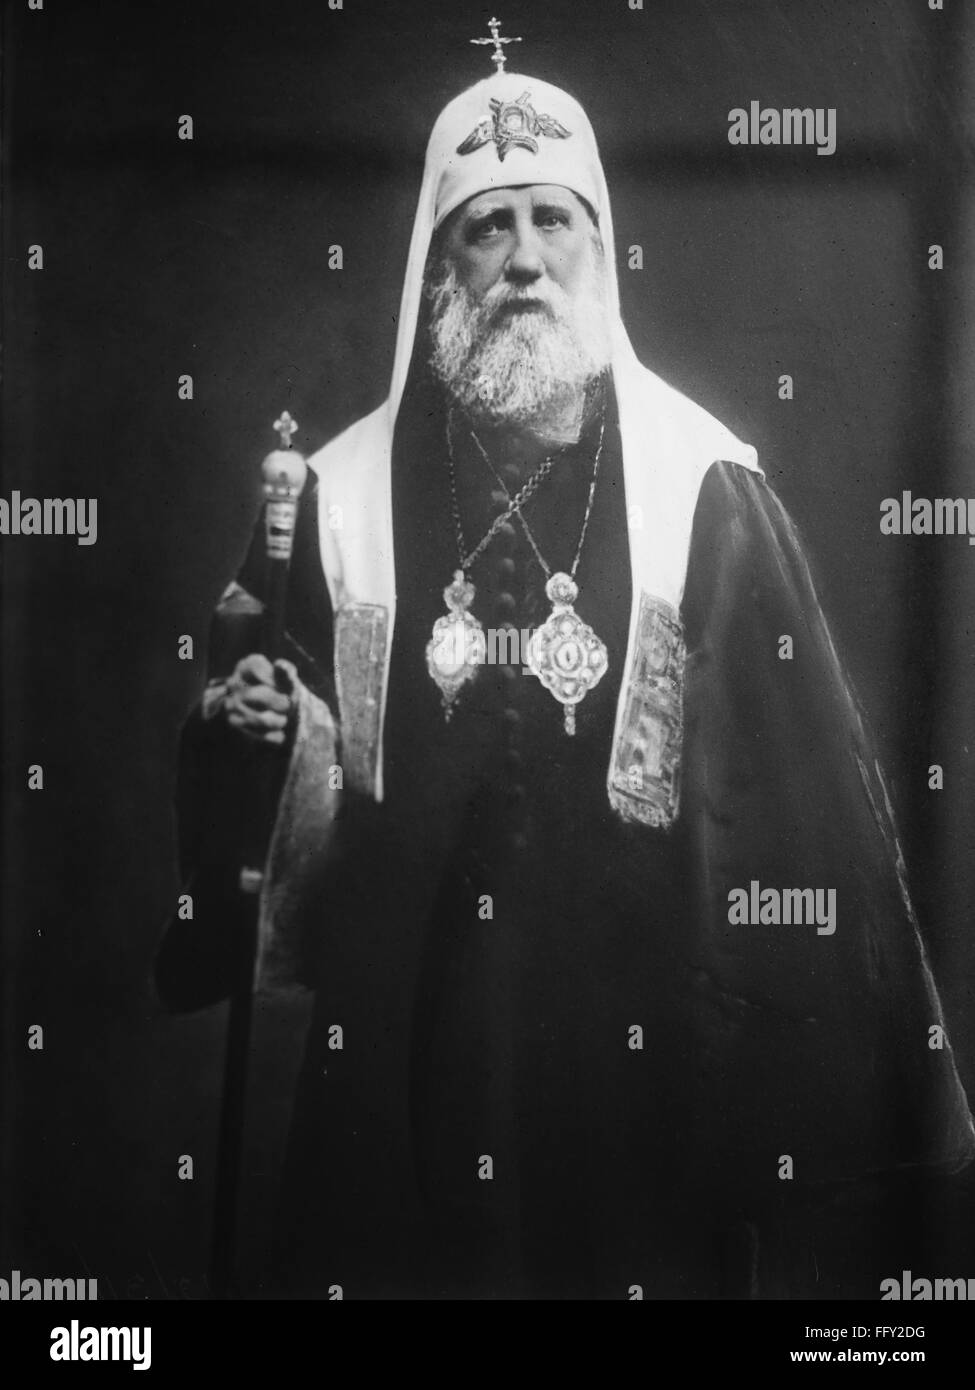 San Tikhon di Mosca (1865-1925). /N11th Patriarca di Mosca e di tutta la Russia la chiesa ortodossa russa dal 1917 al 1925. Nato Vasily Ivanovich Bellavin. Fotografia, c1920. Foto Stock